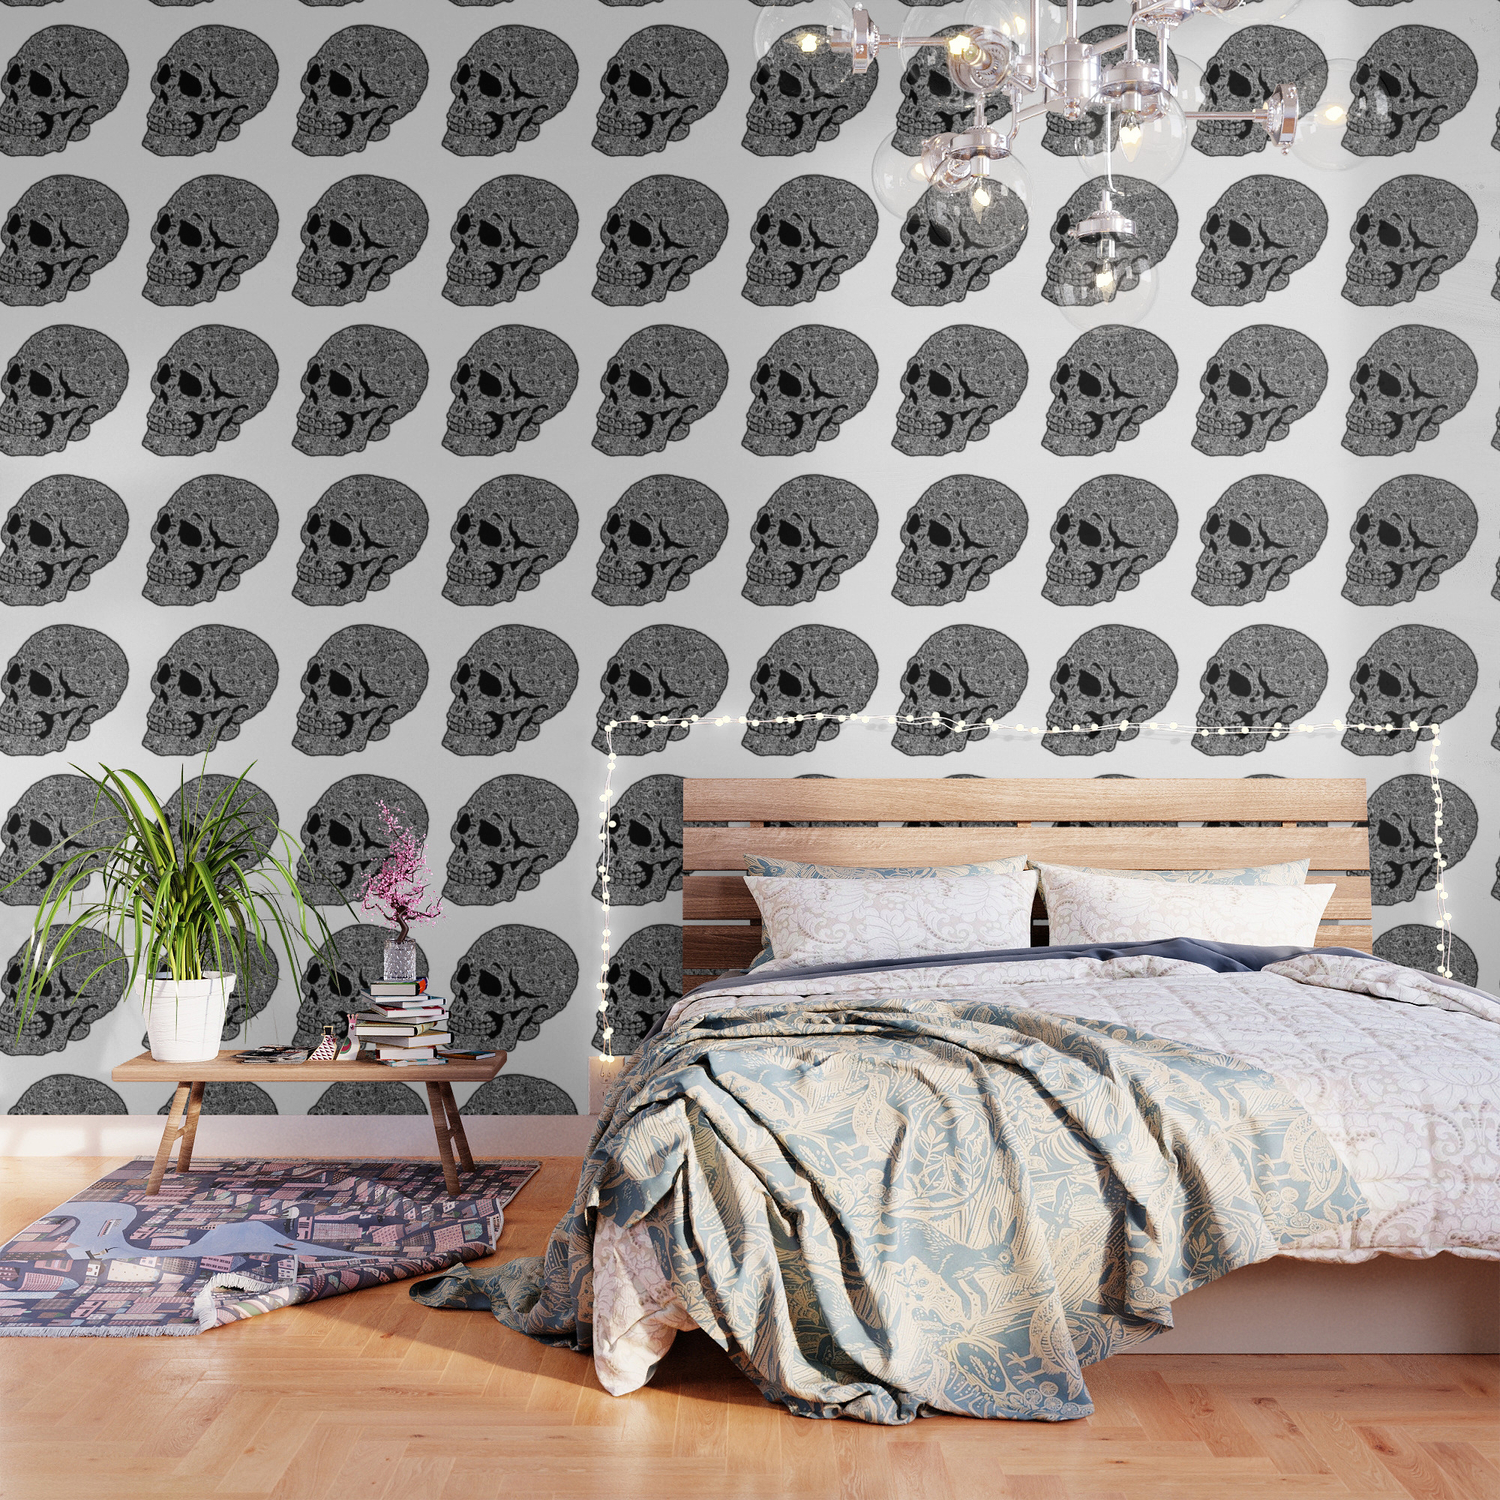 Skull doodle pattern - white on black - trippy art Wallpaper by Brand Name  Nerd | Society6